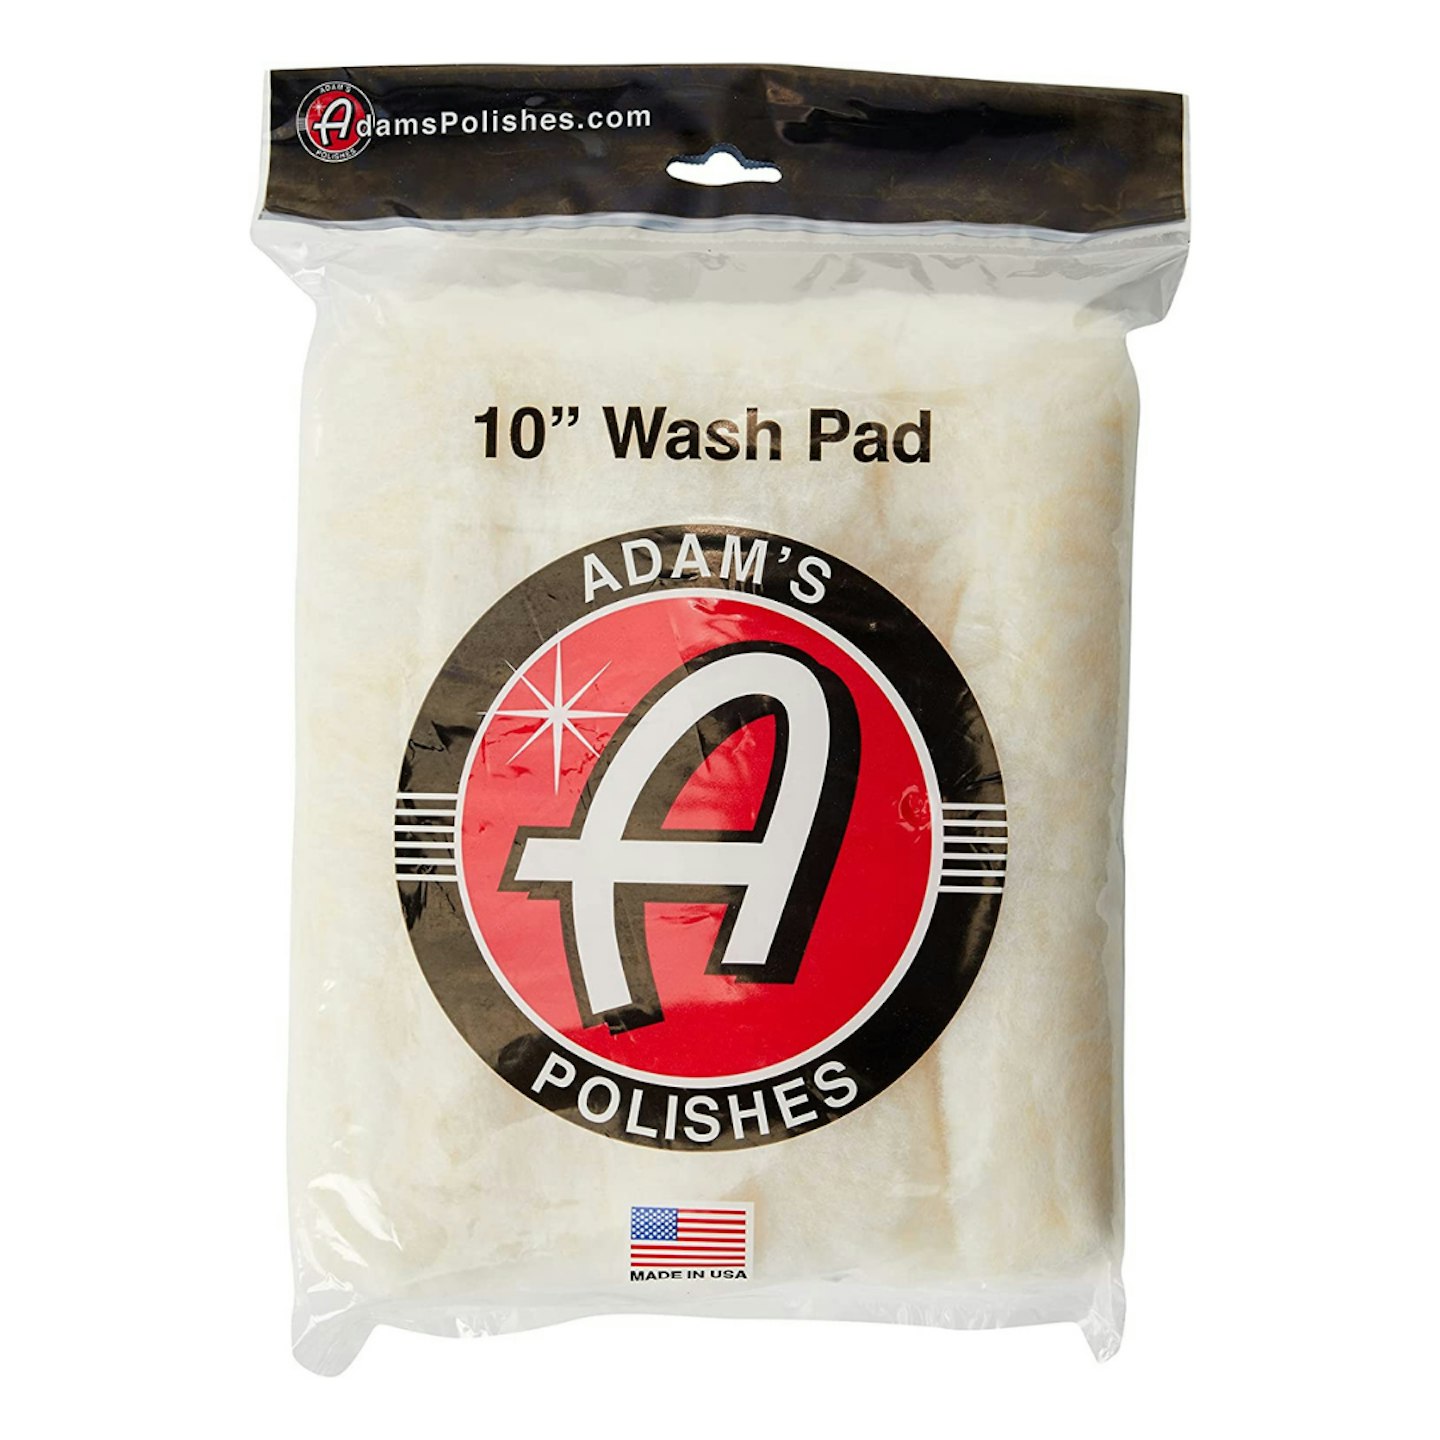 Adam's Polishes wash pad